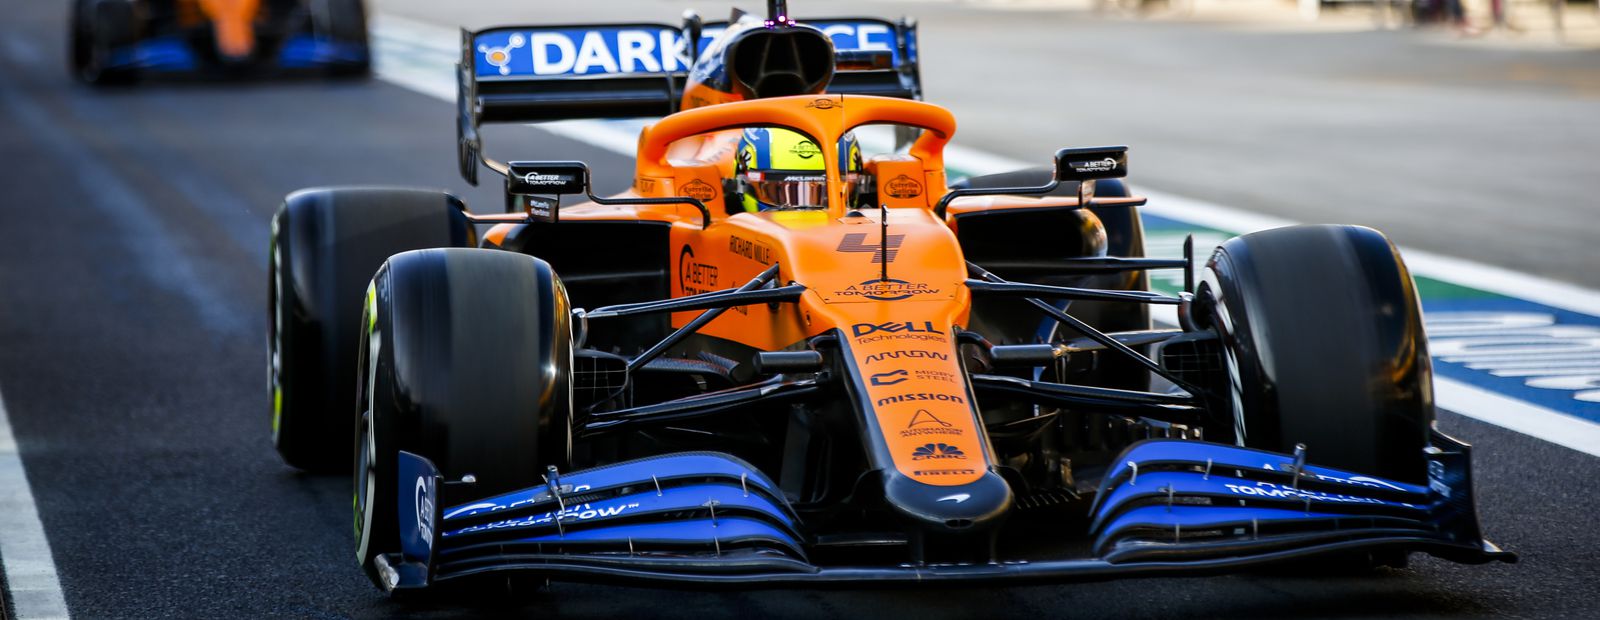 McLaren Racing: innovación basada en datos a pie de pista. 